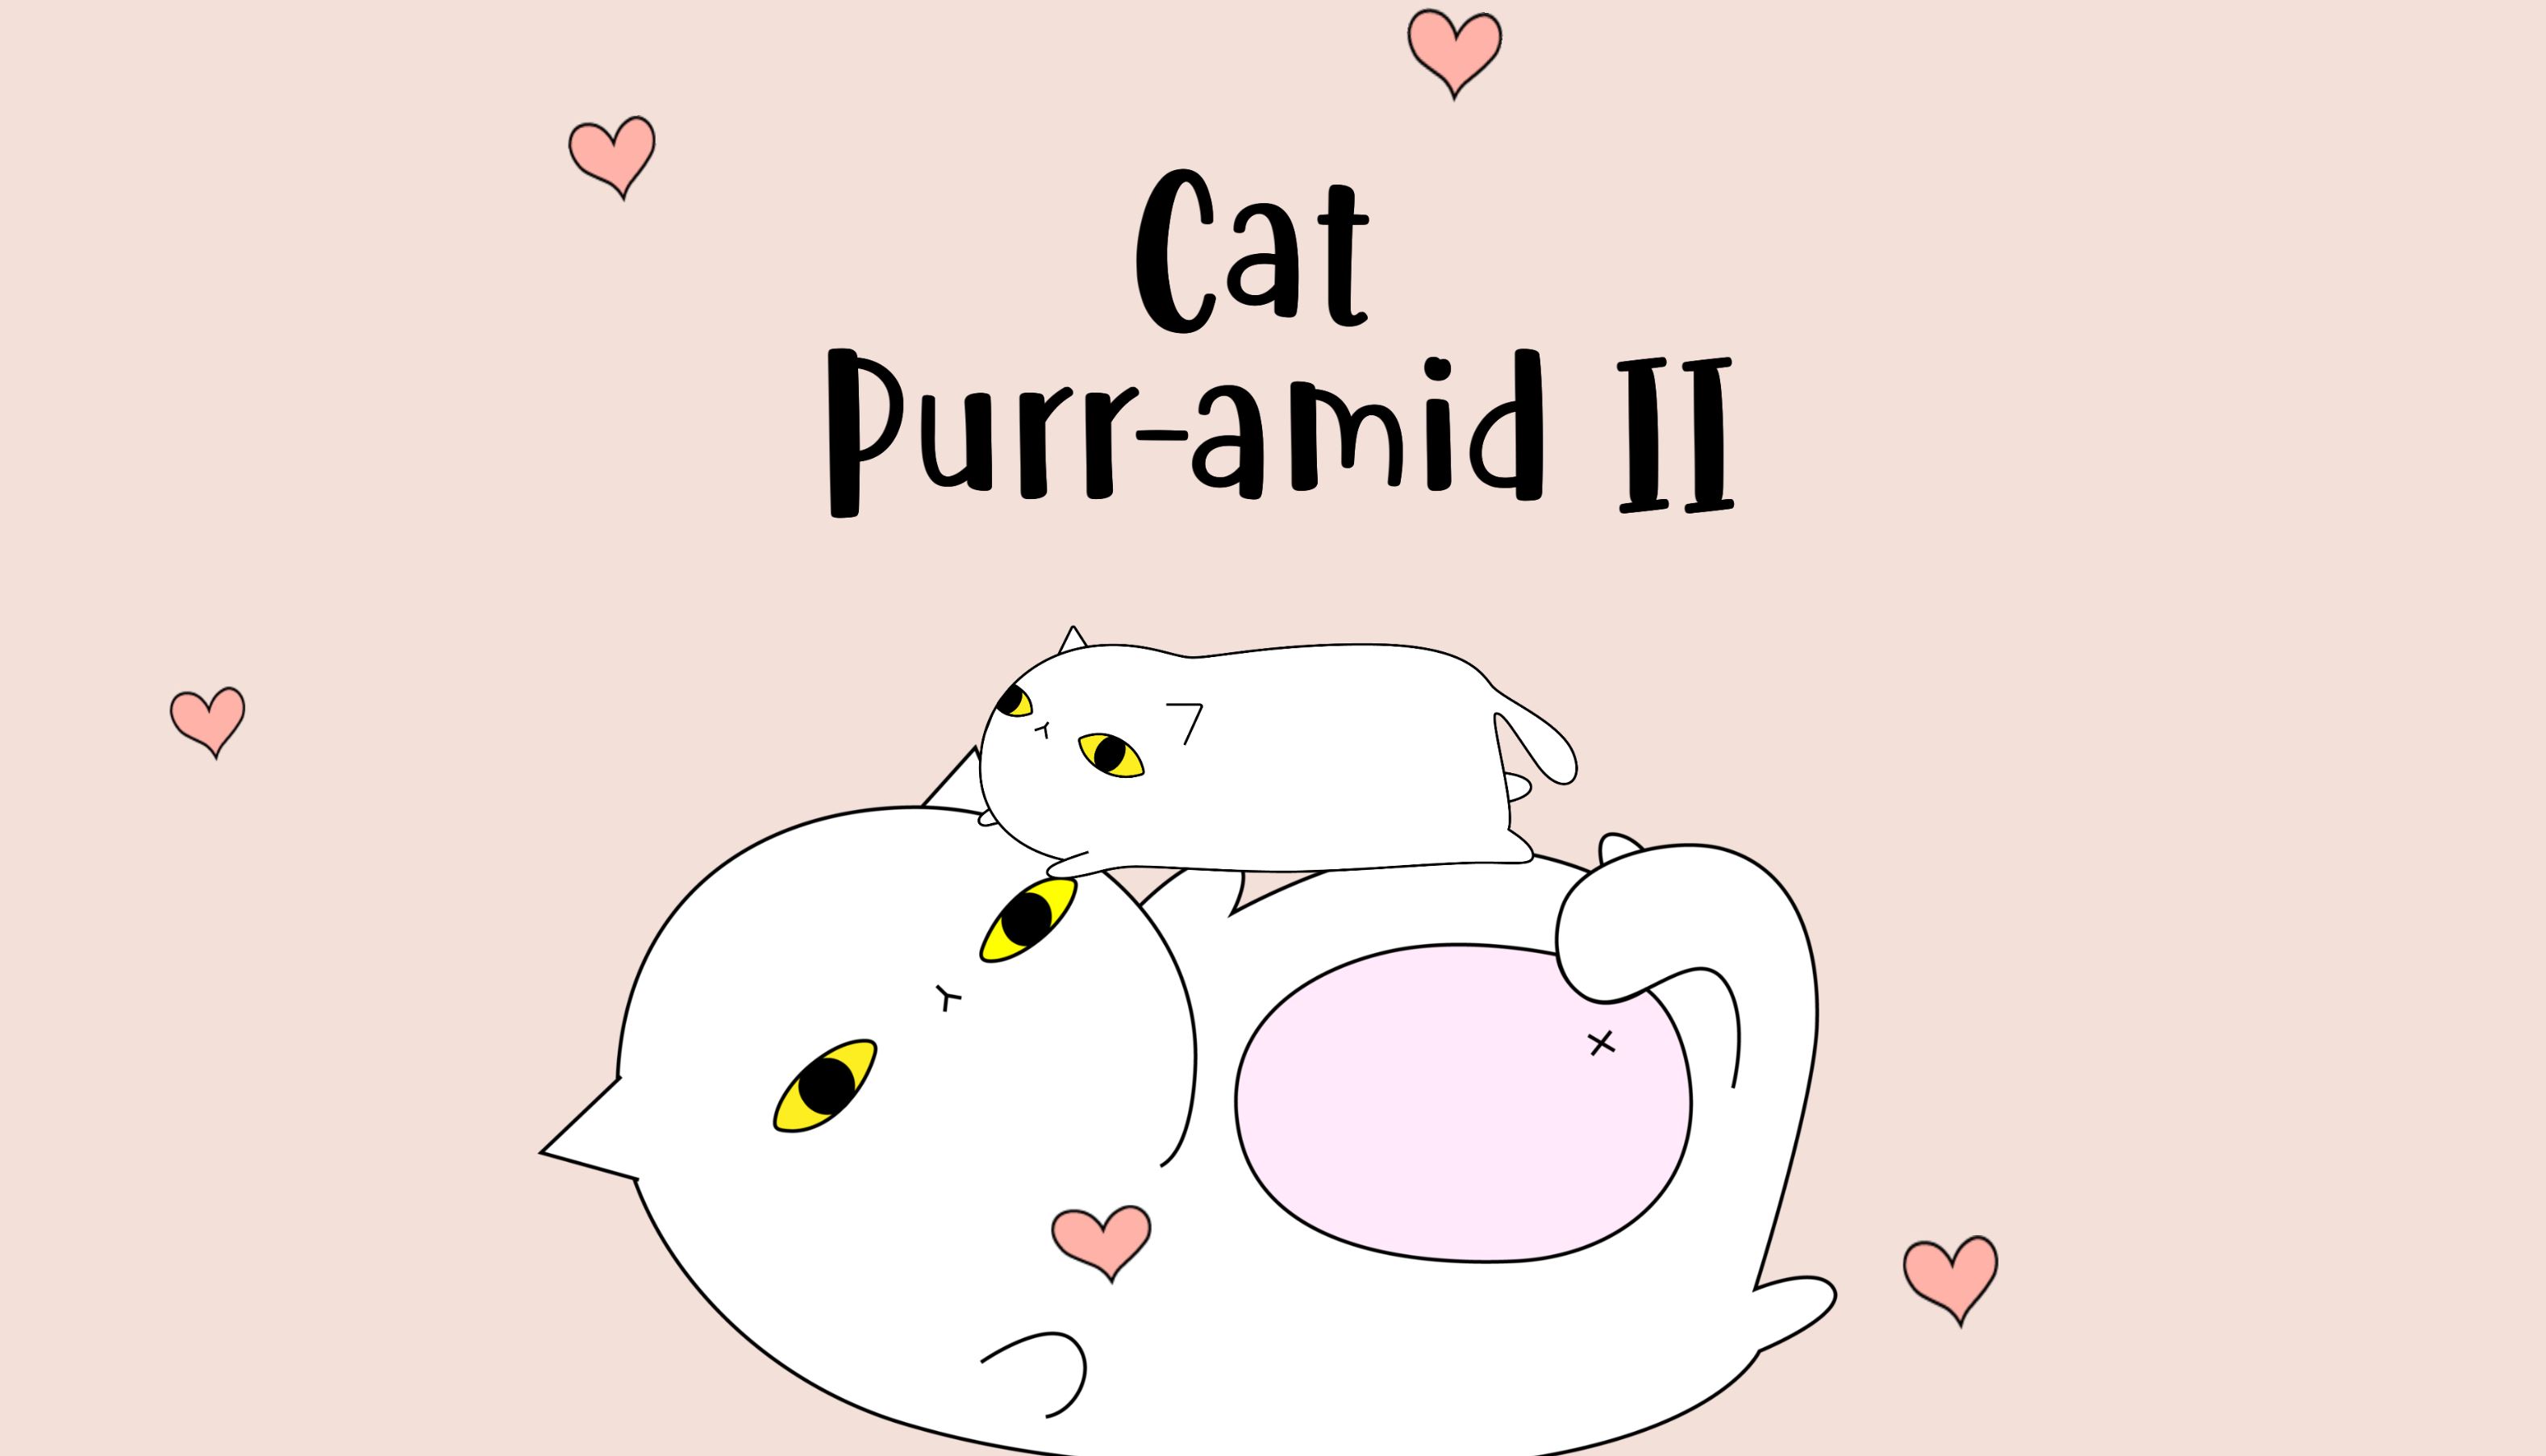 Cat Purr-amid II